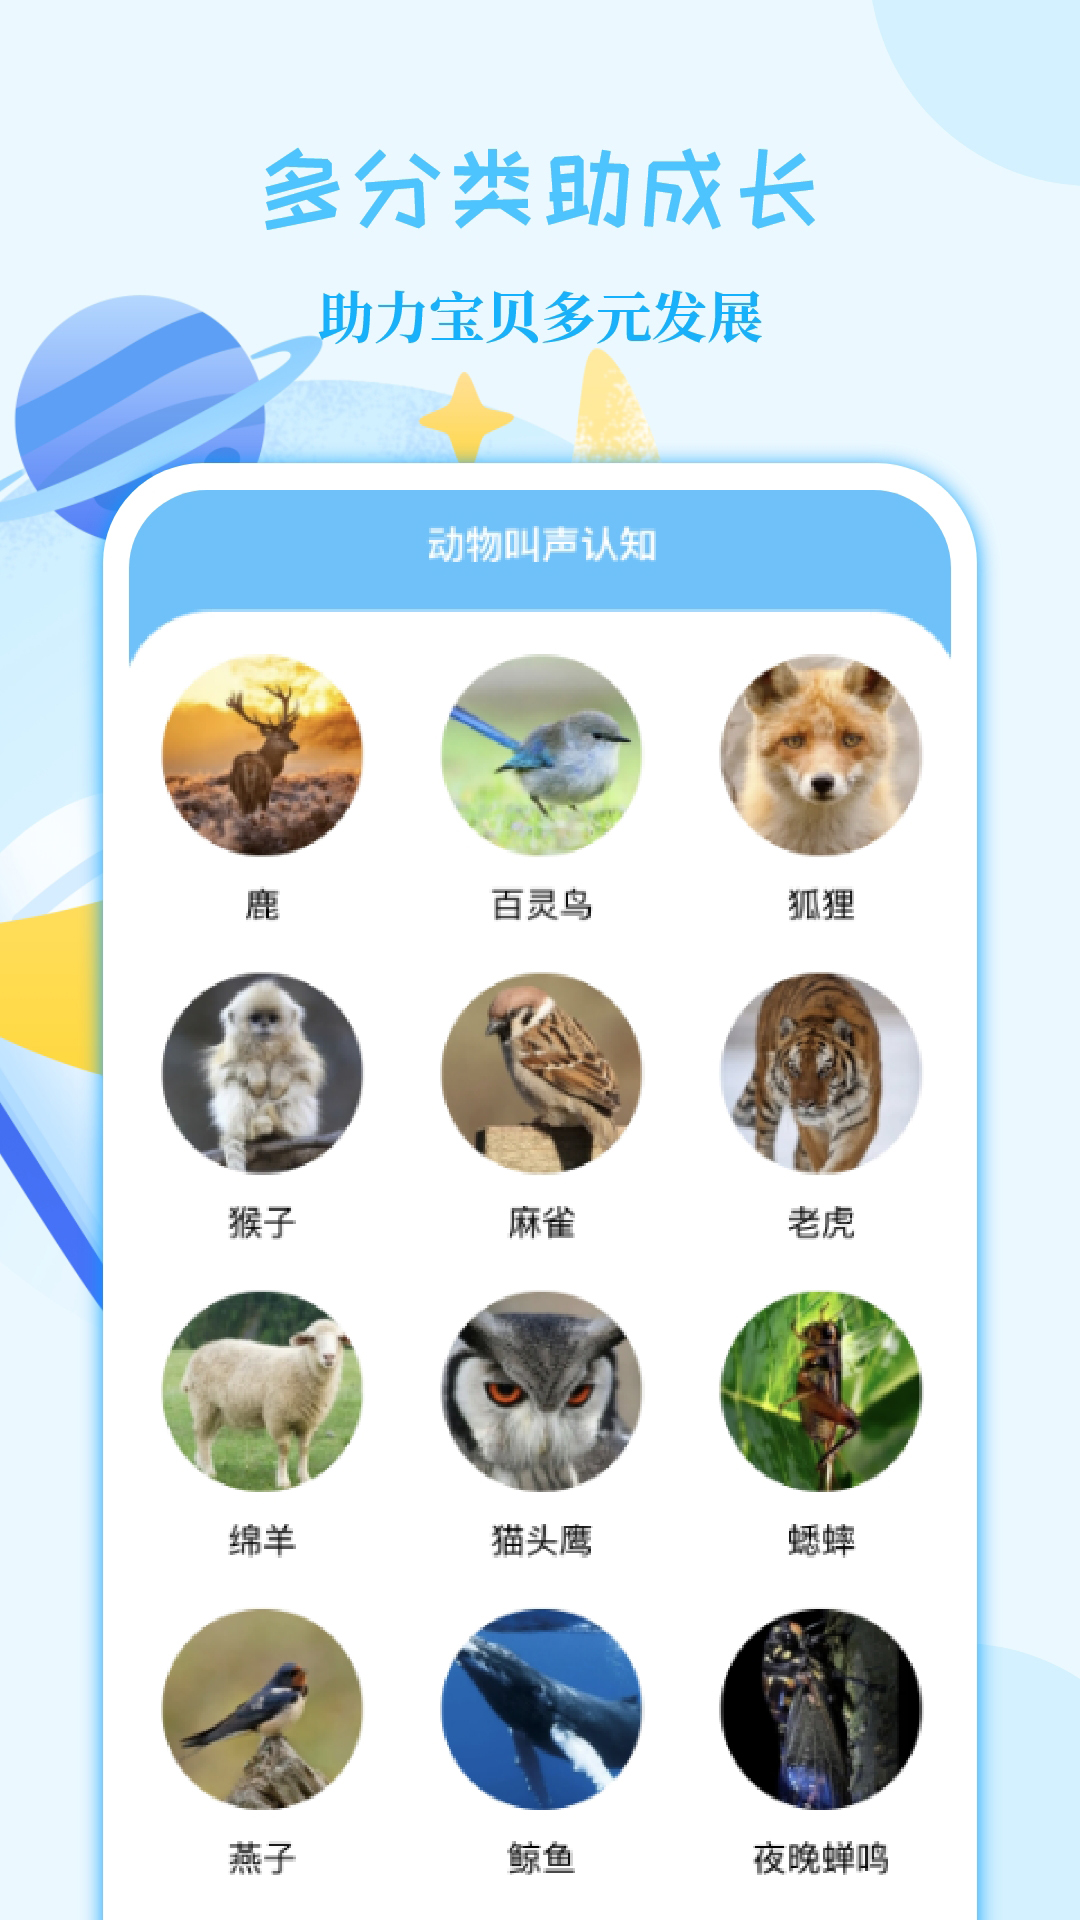 亲子故事会app 2.0.112.1.11